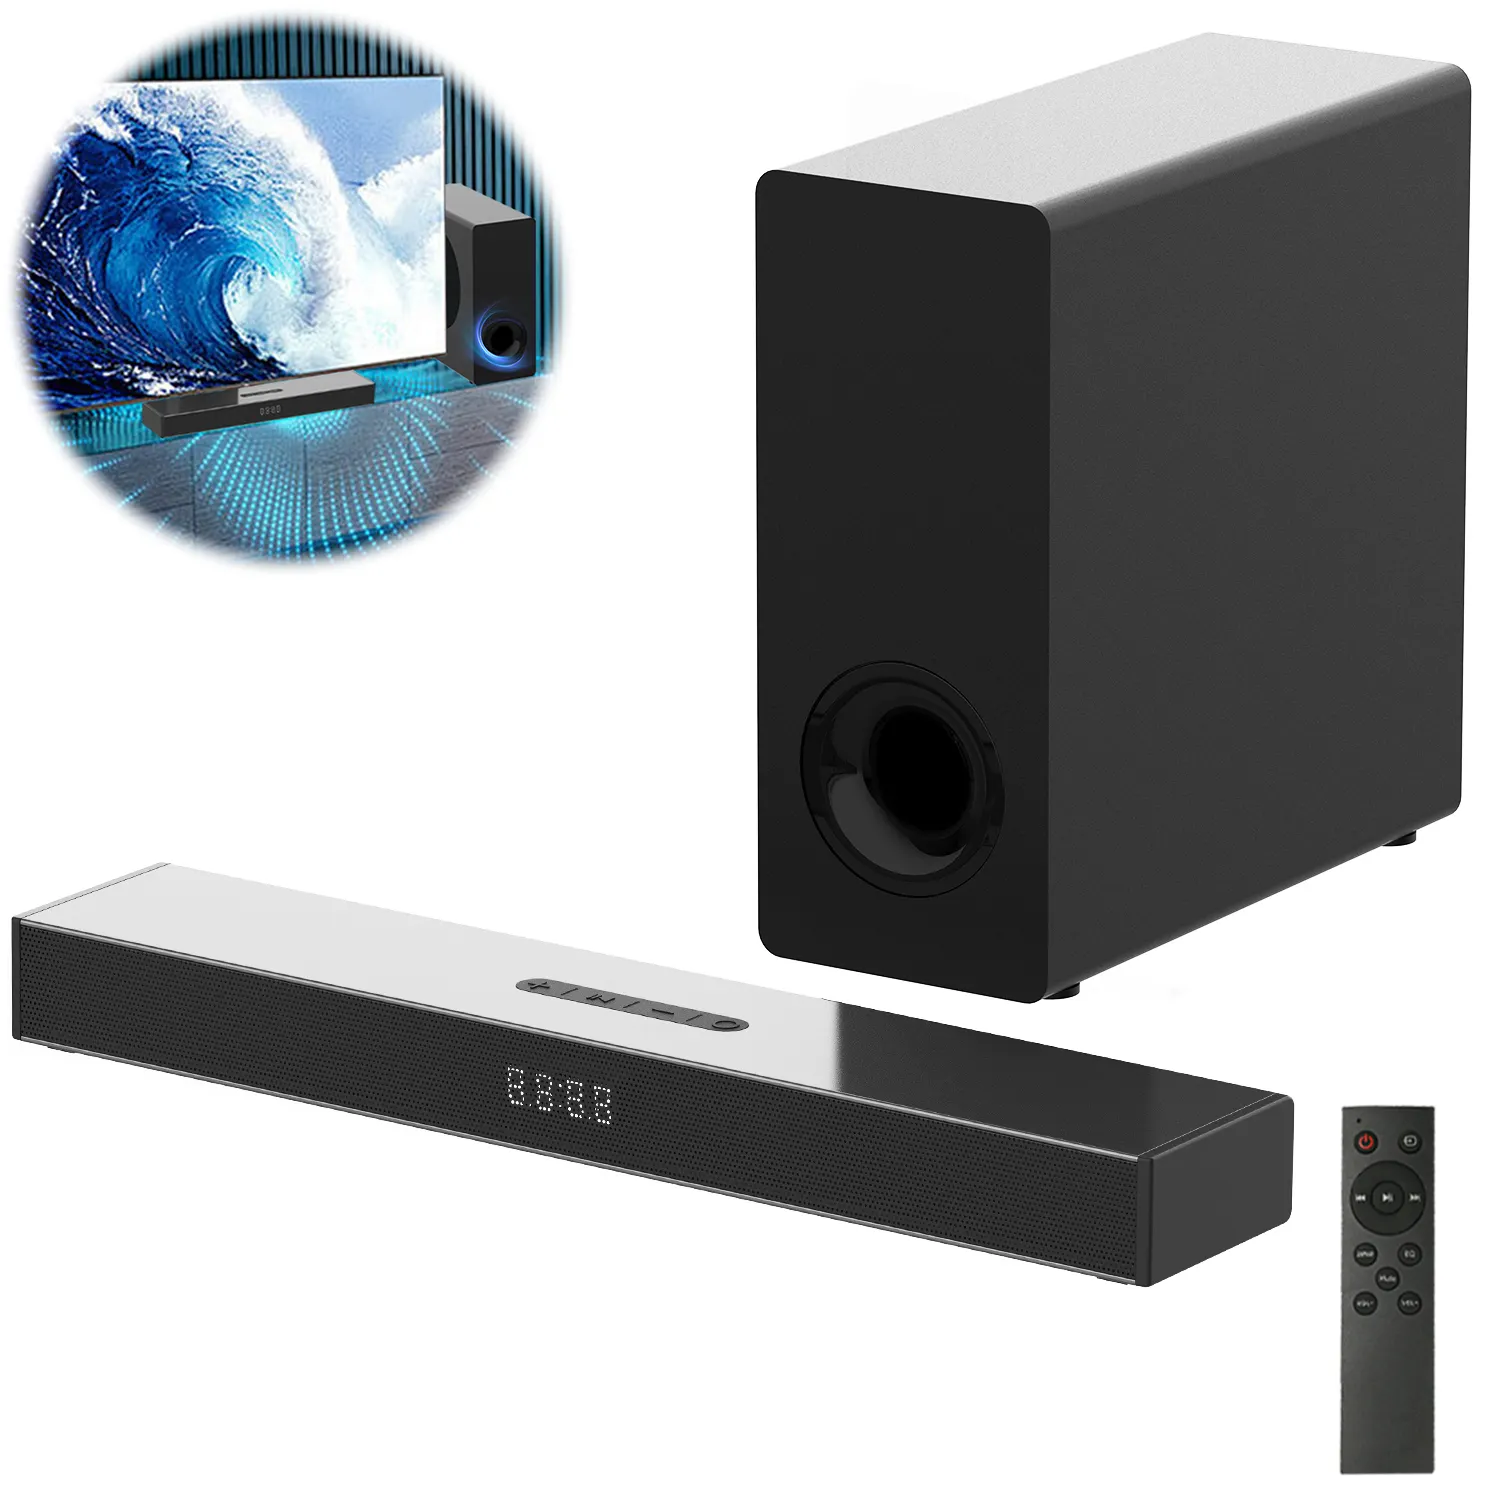 Schlussverkauf kabellose Soundbar mit Subwoofer Fernseher-Soundbar-System Heimkino Surround-Lautsprecher